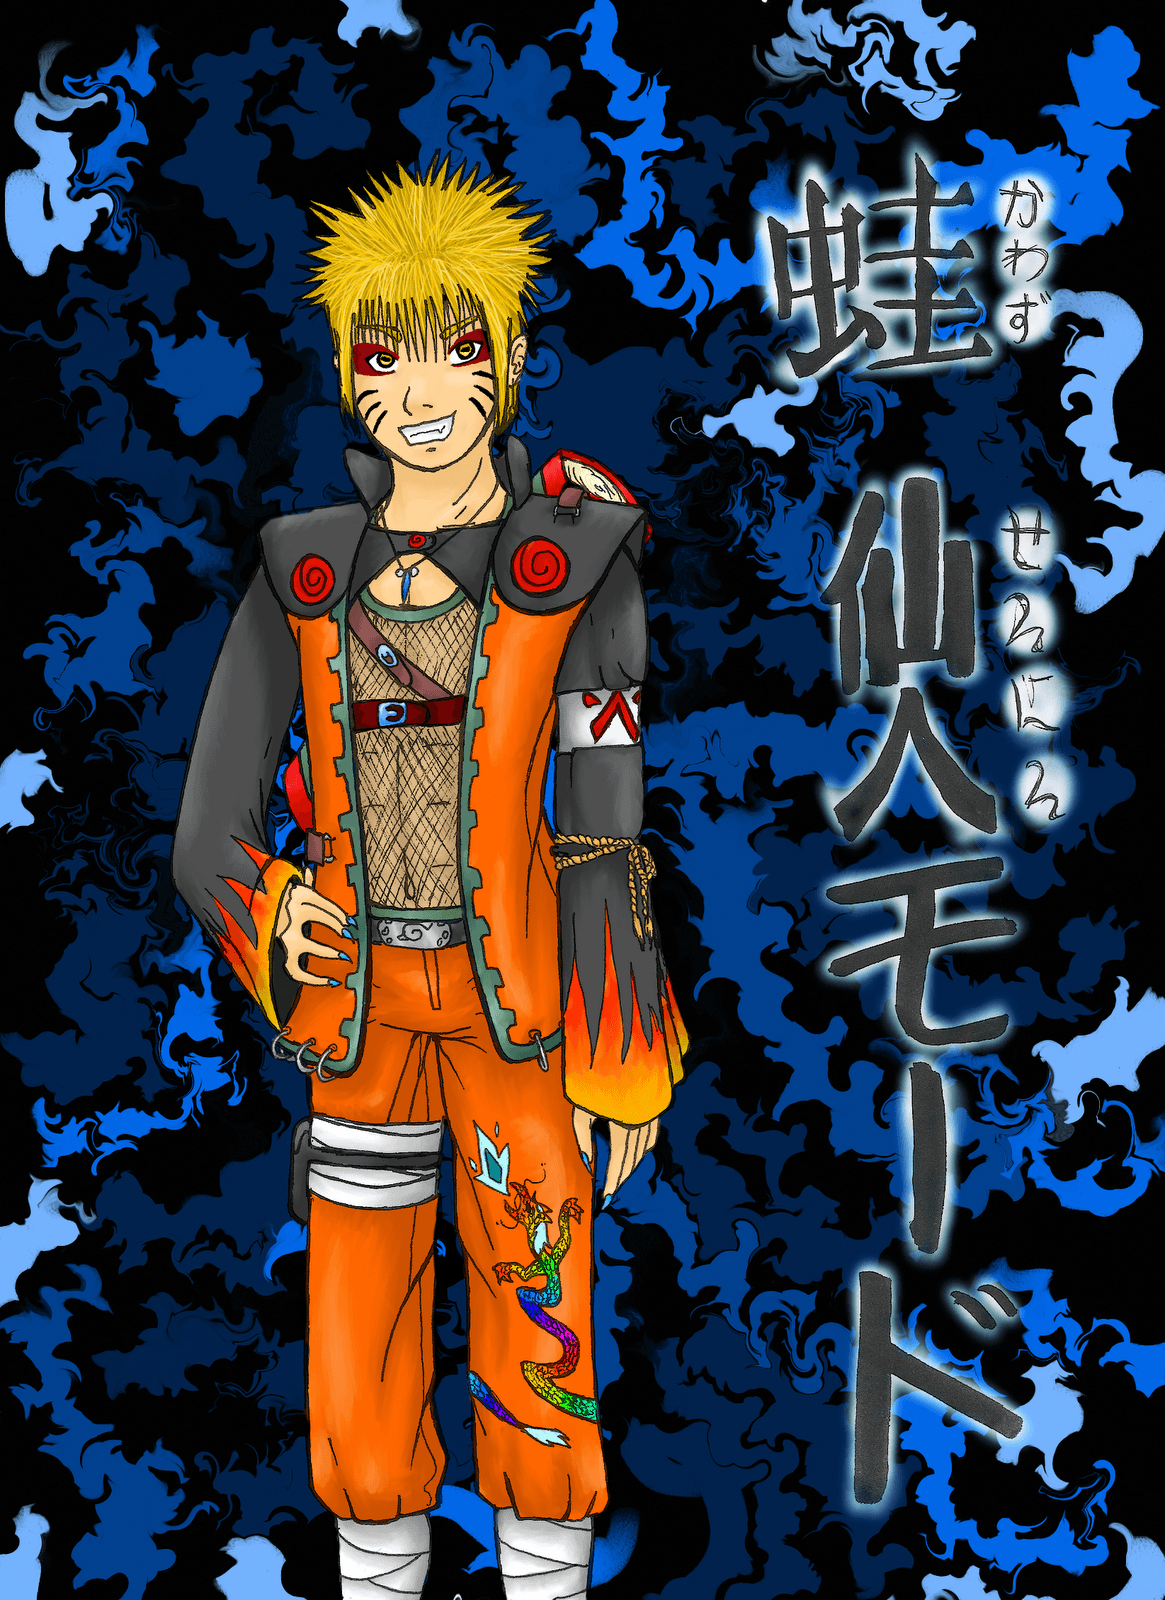 Naruto sage mode wallpaper